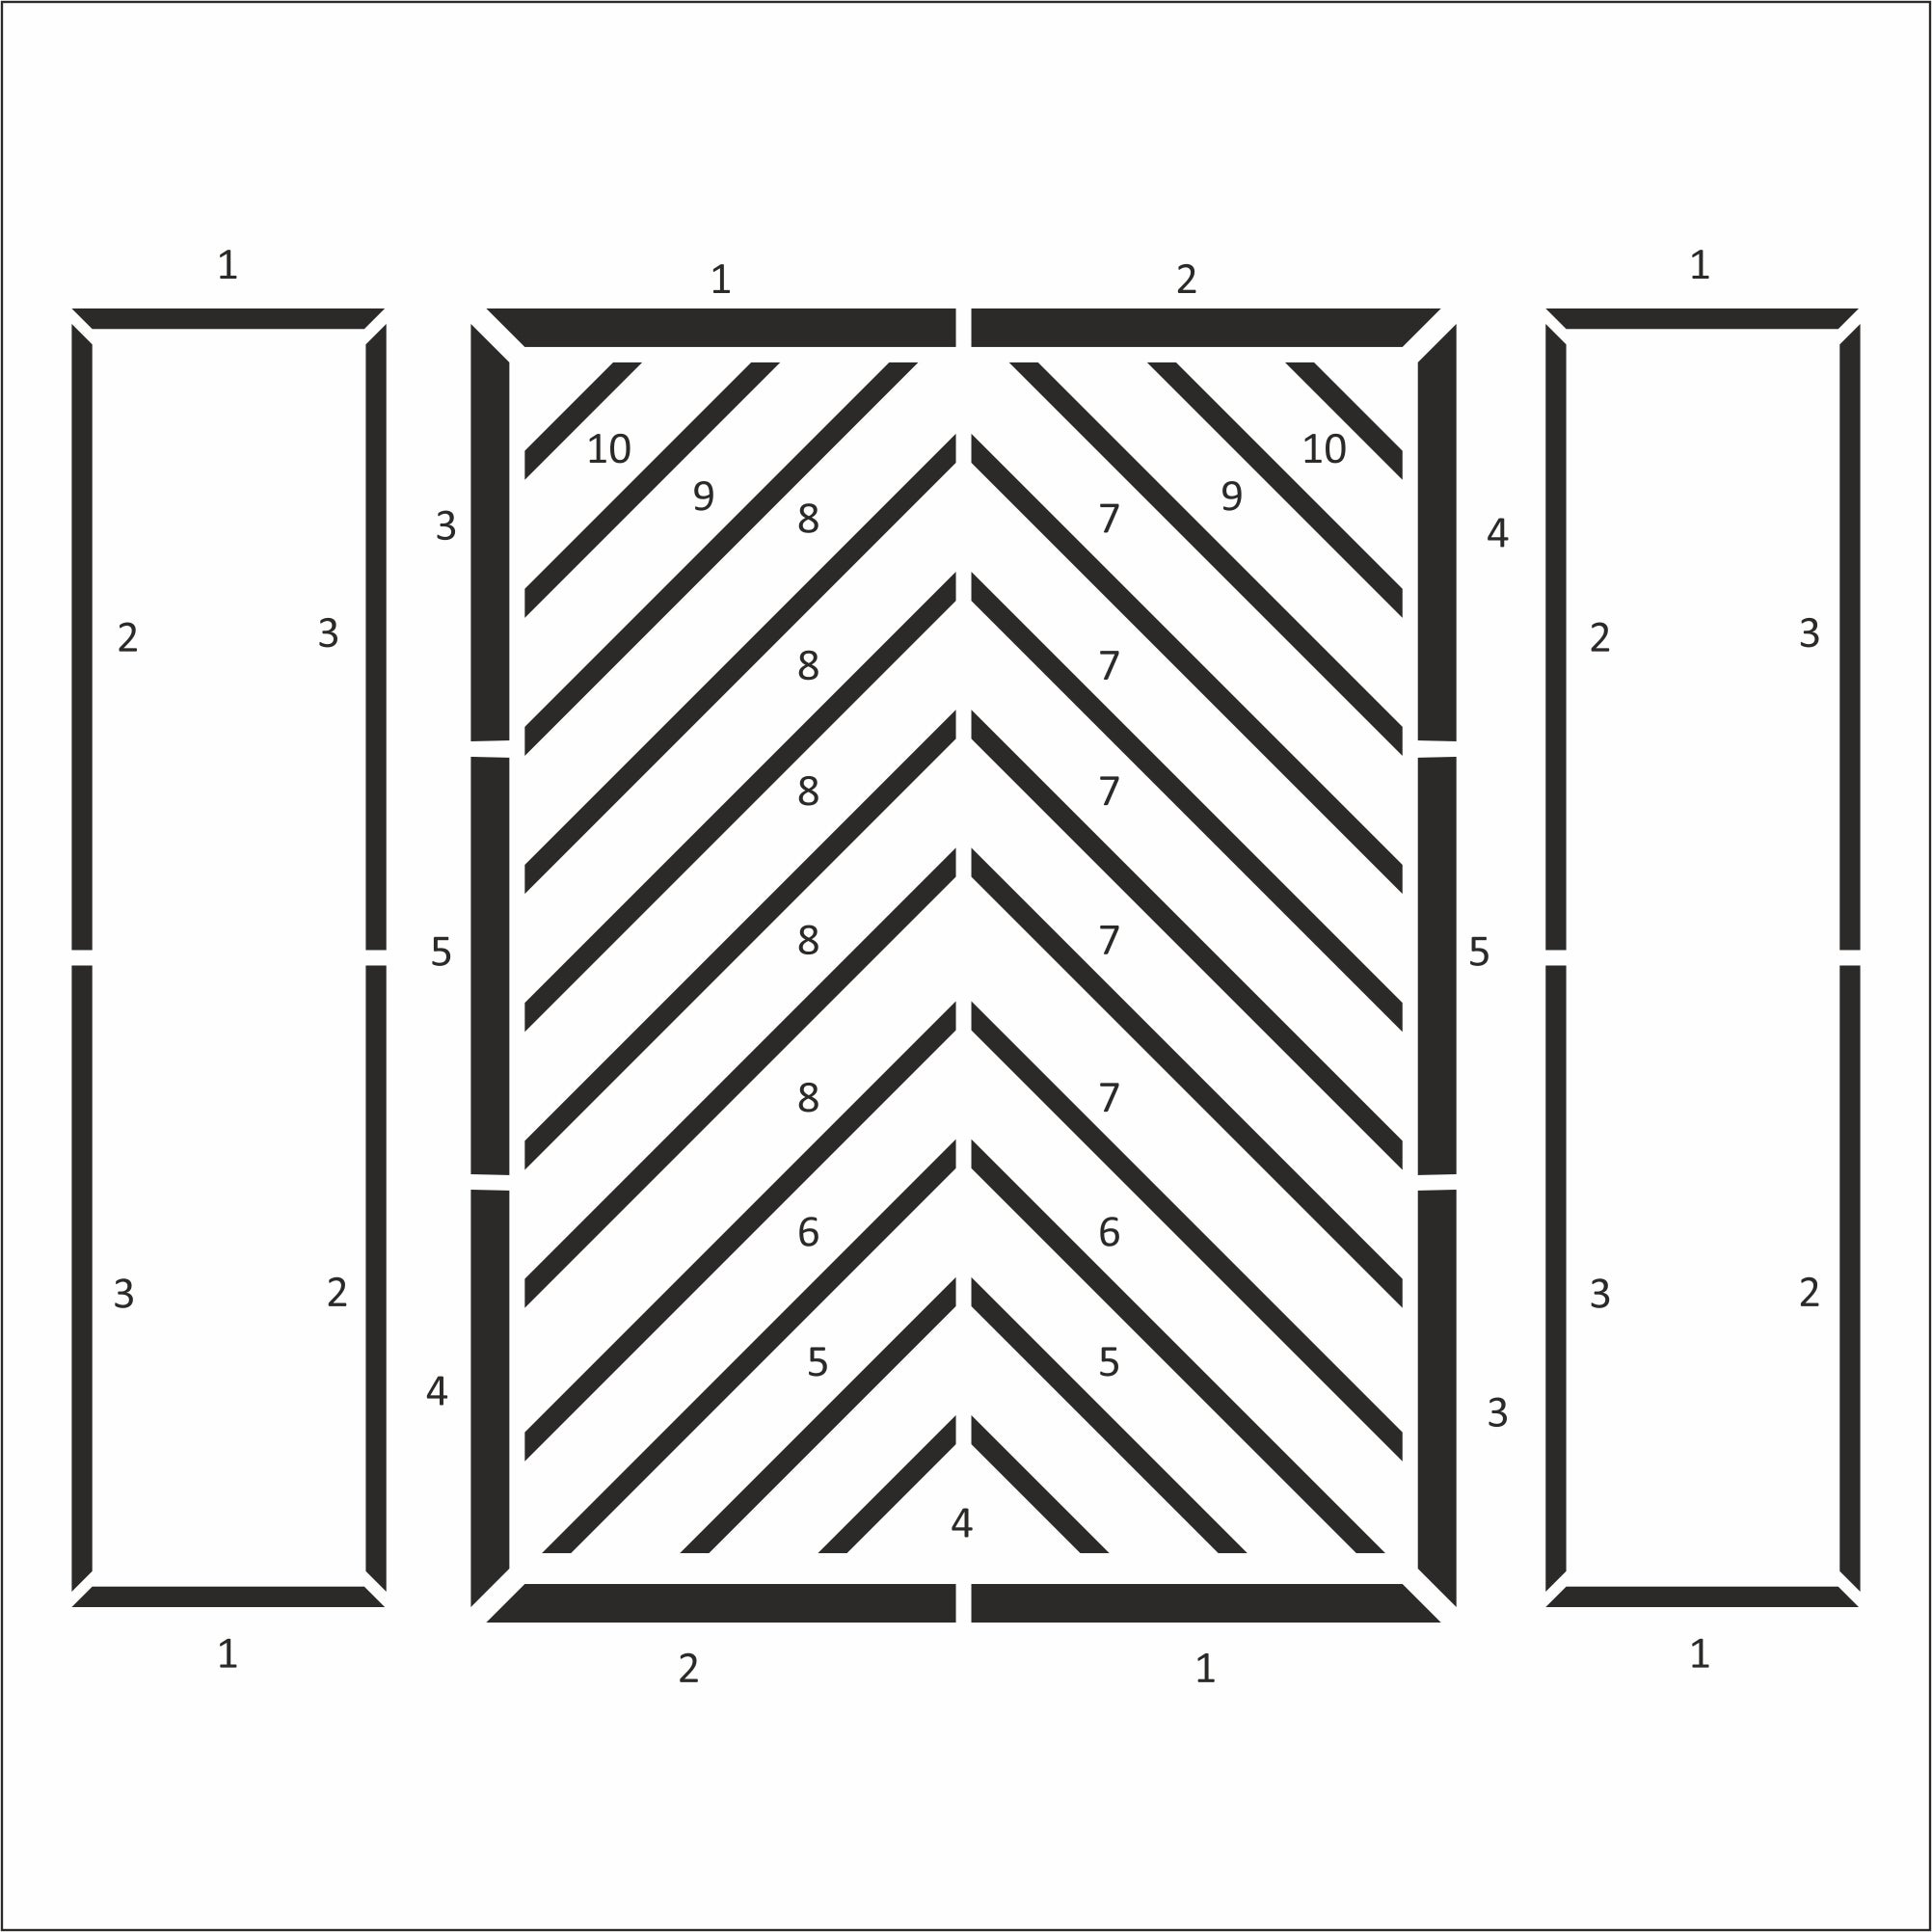 Kit modanatura da parete - 2 cornici laterali e 1 cornice centrale (P34)